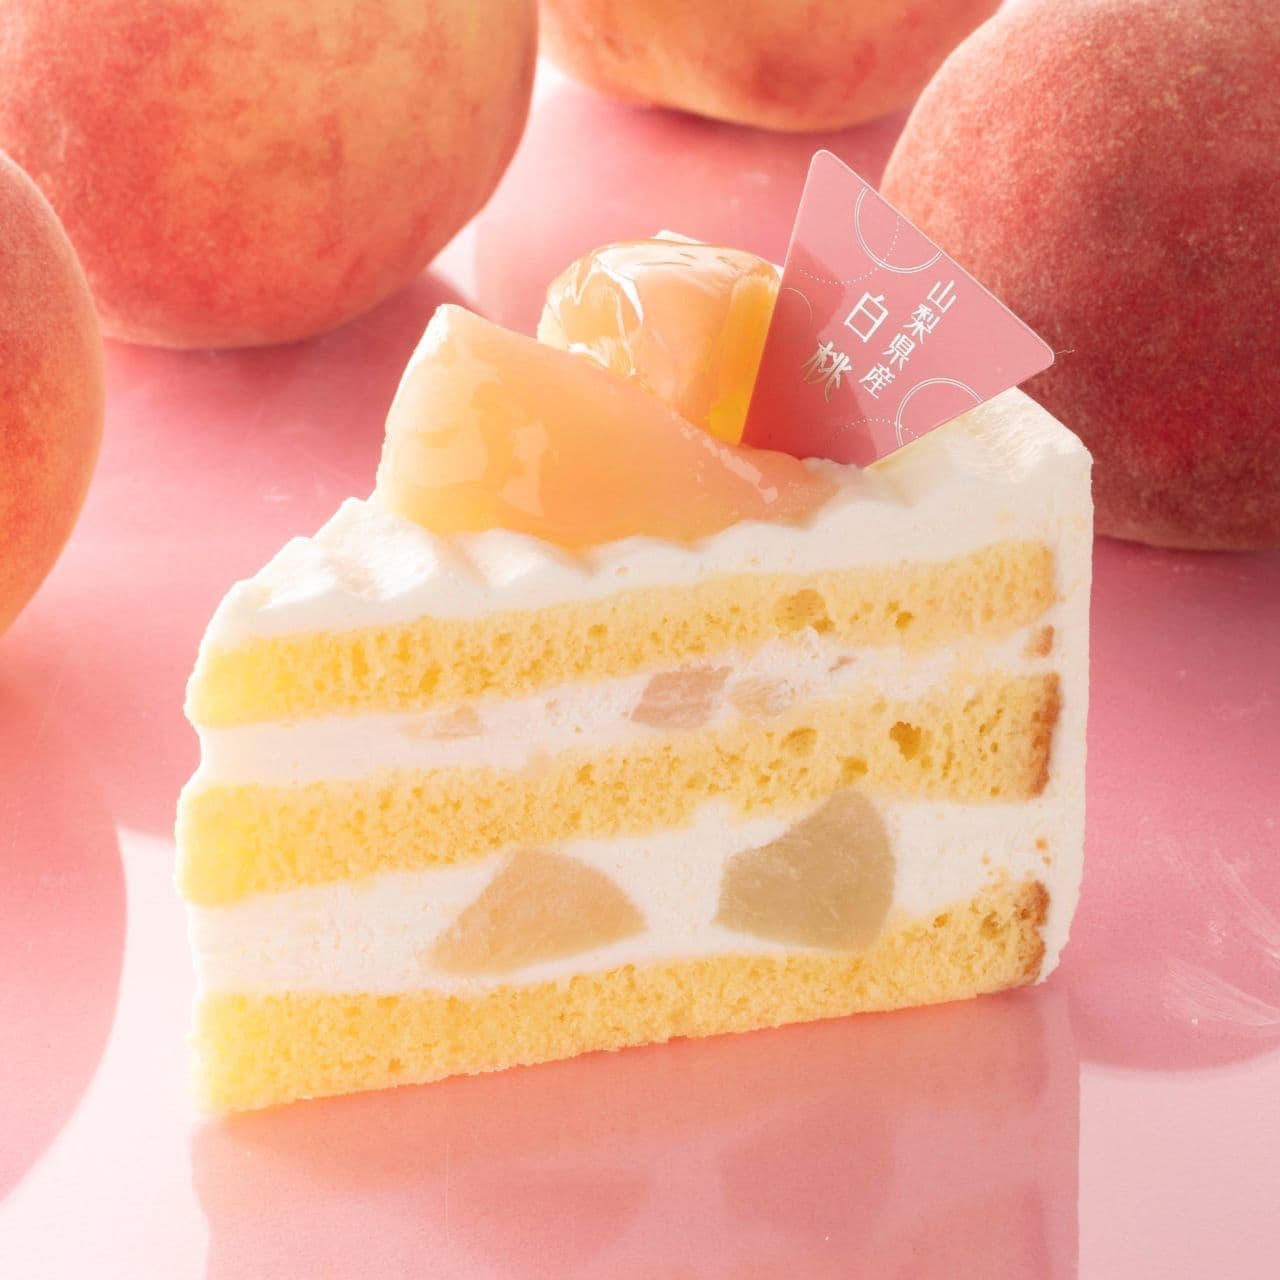 Peach and raspberry bellini cake recipe